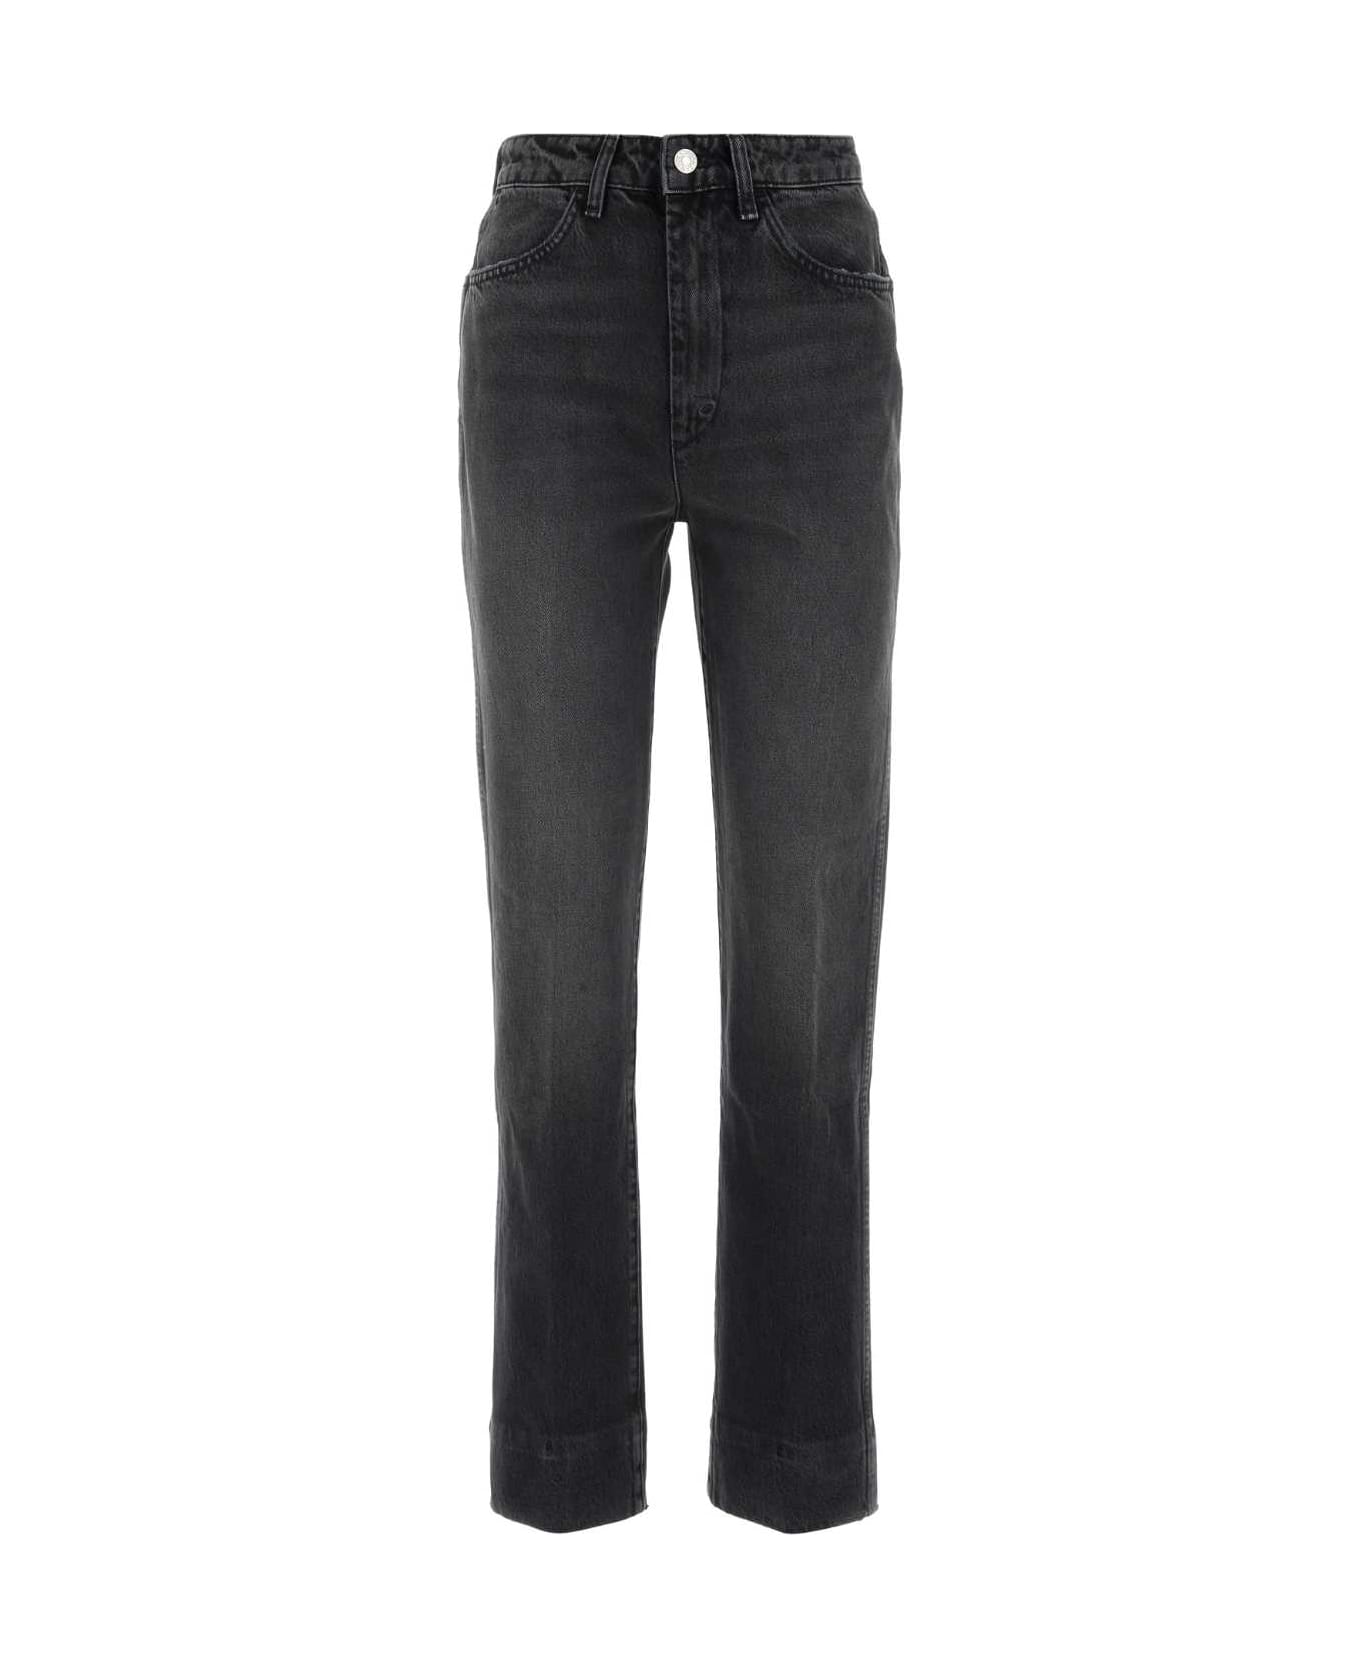 RE/DONE Black Denim Jeans - BLACKSEA